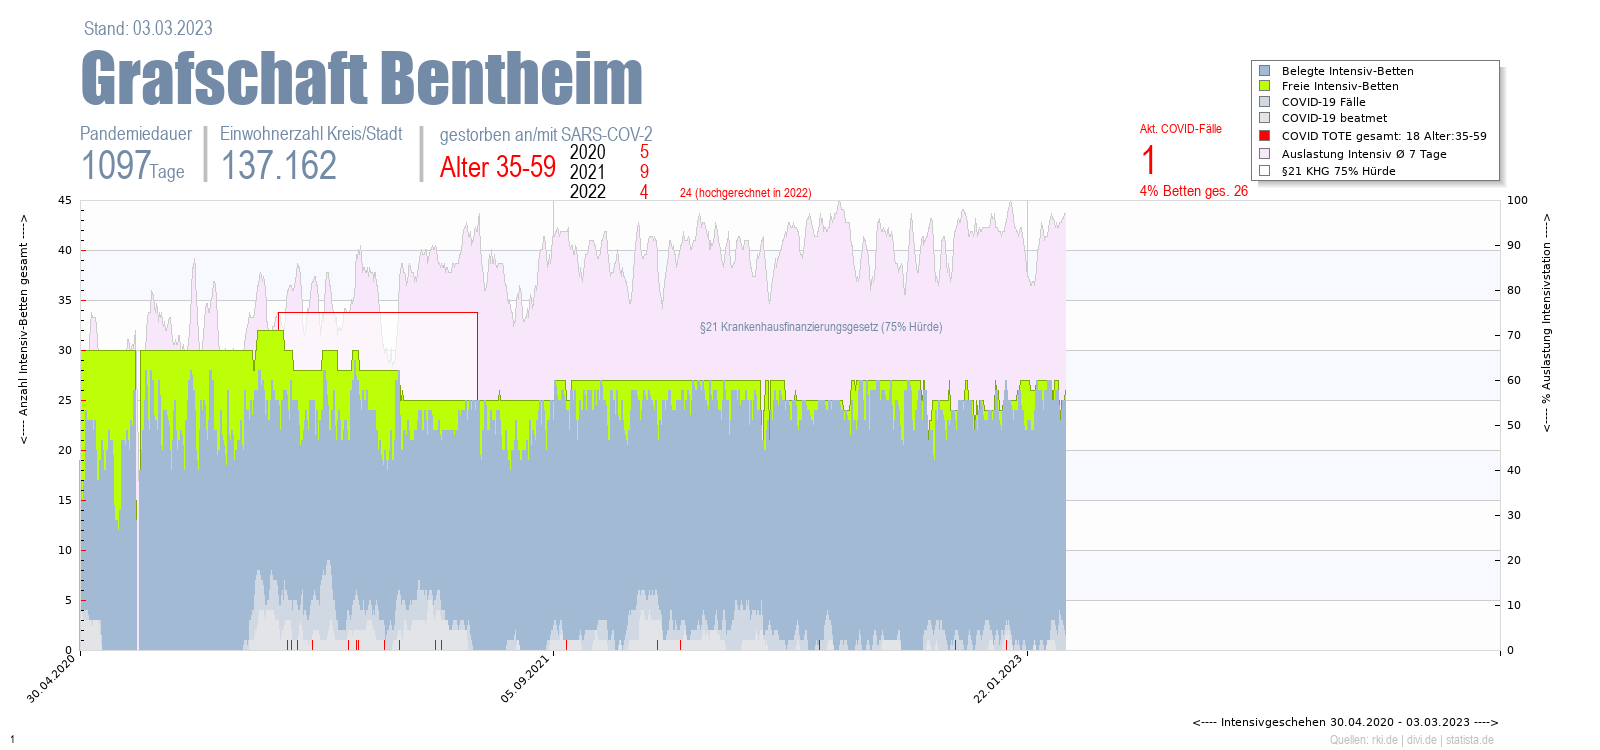 Intensivstation Auslastung Grafschaft Bentheim Alter 0-4